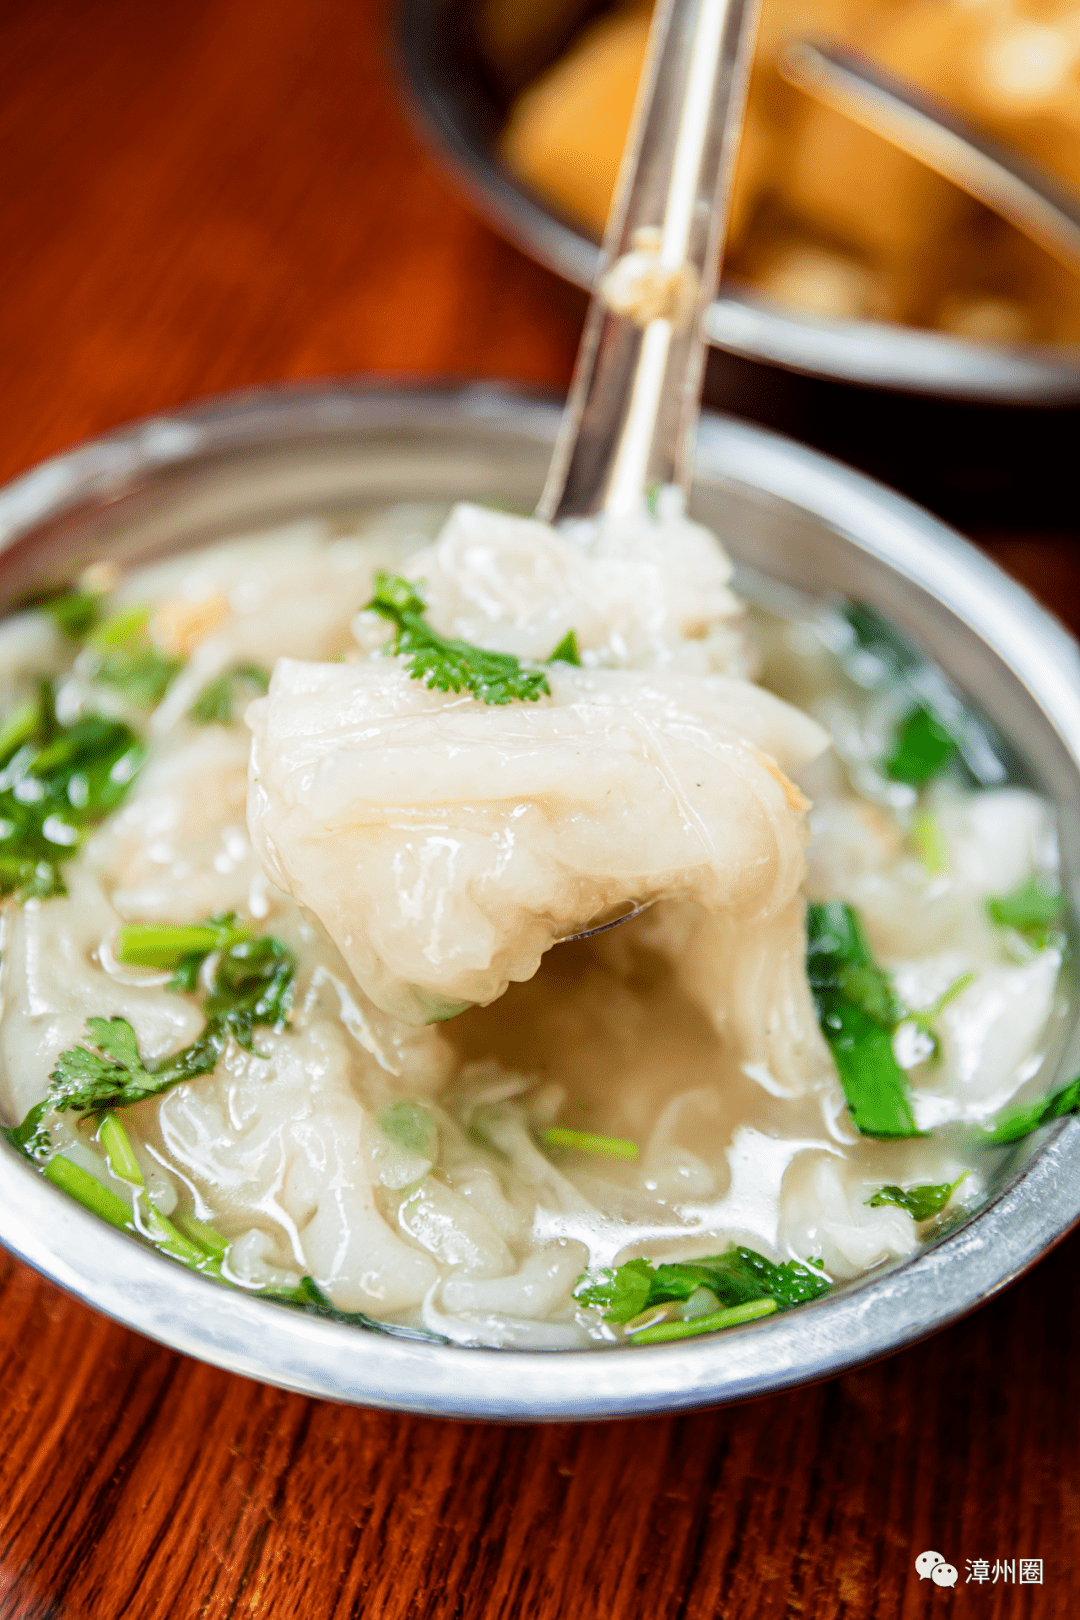 在漳州吃锅边糊,必不可少的就是卤料,40多年的老味道不是吹